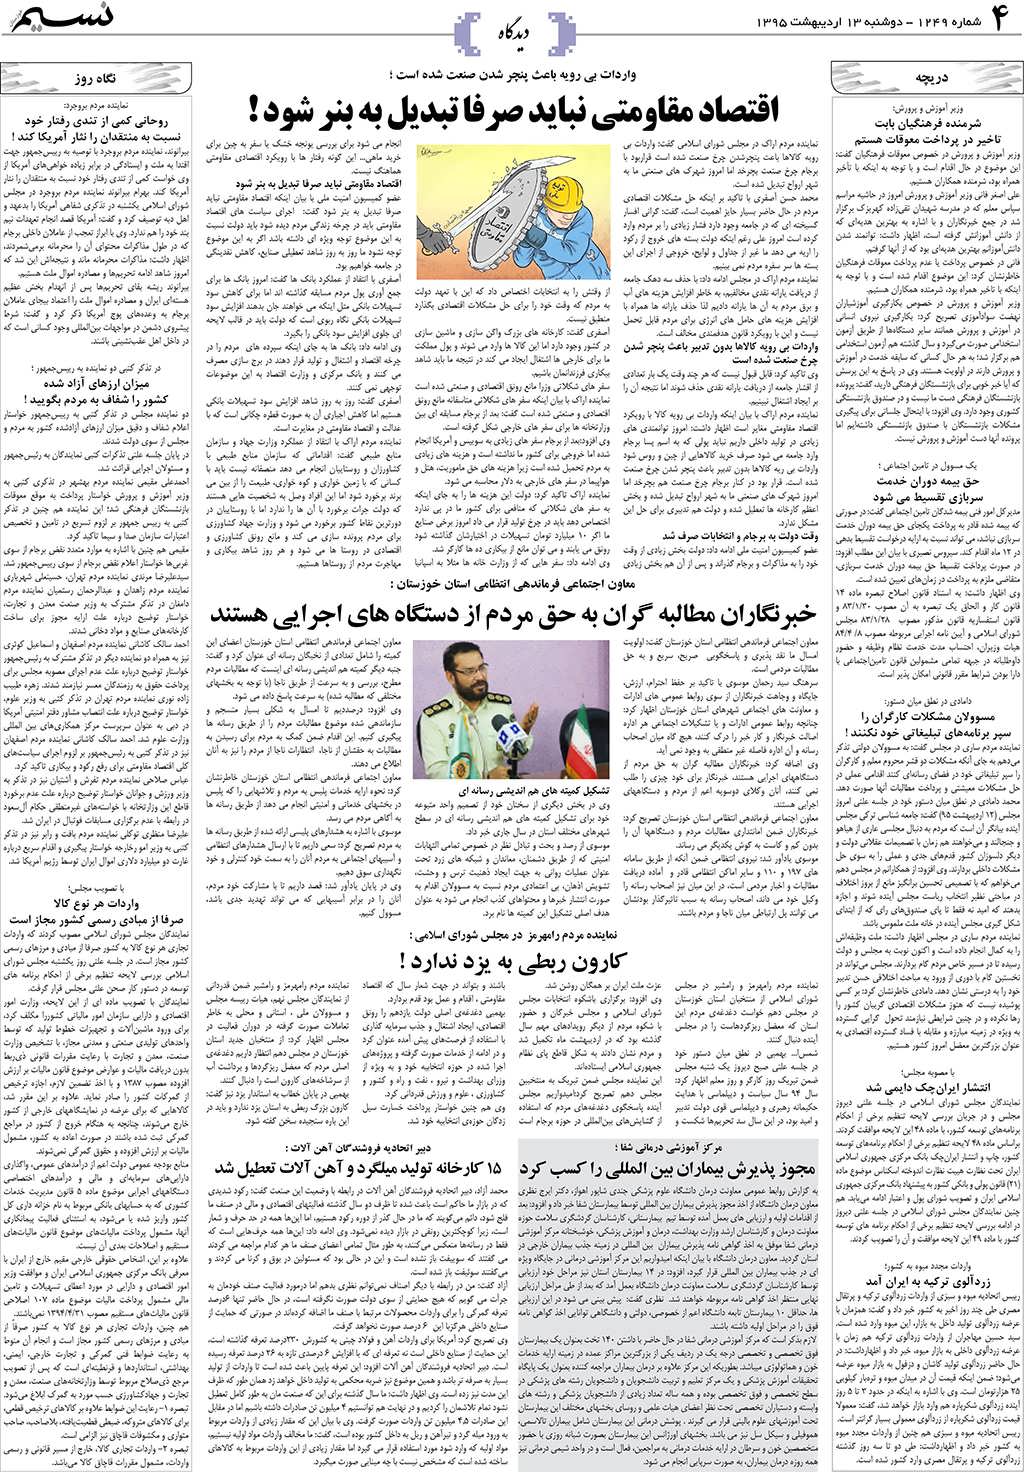 صفحه دیدگاه روزنامه نسیم شماره 1249